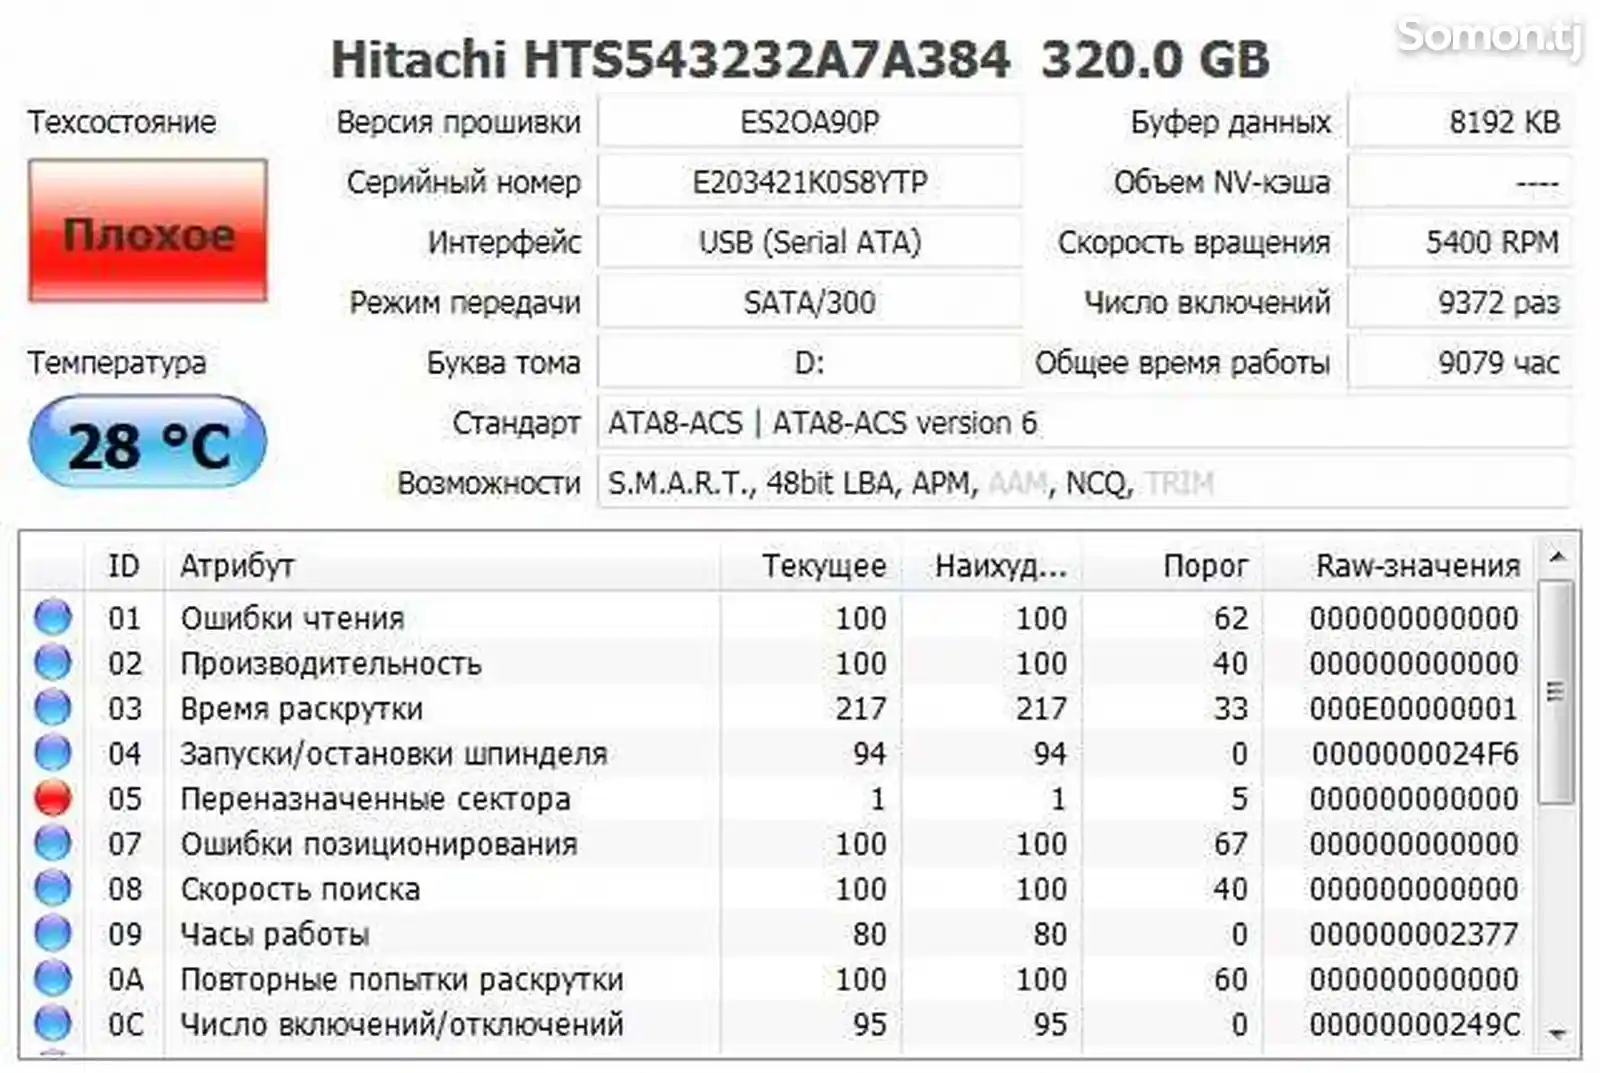 Жесткий диск 320 Gb Hitachi HTS543232A7A384 на запчасти-3